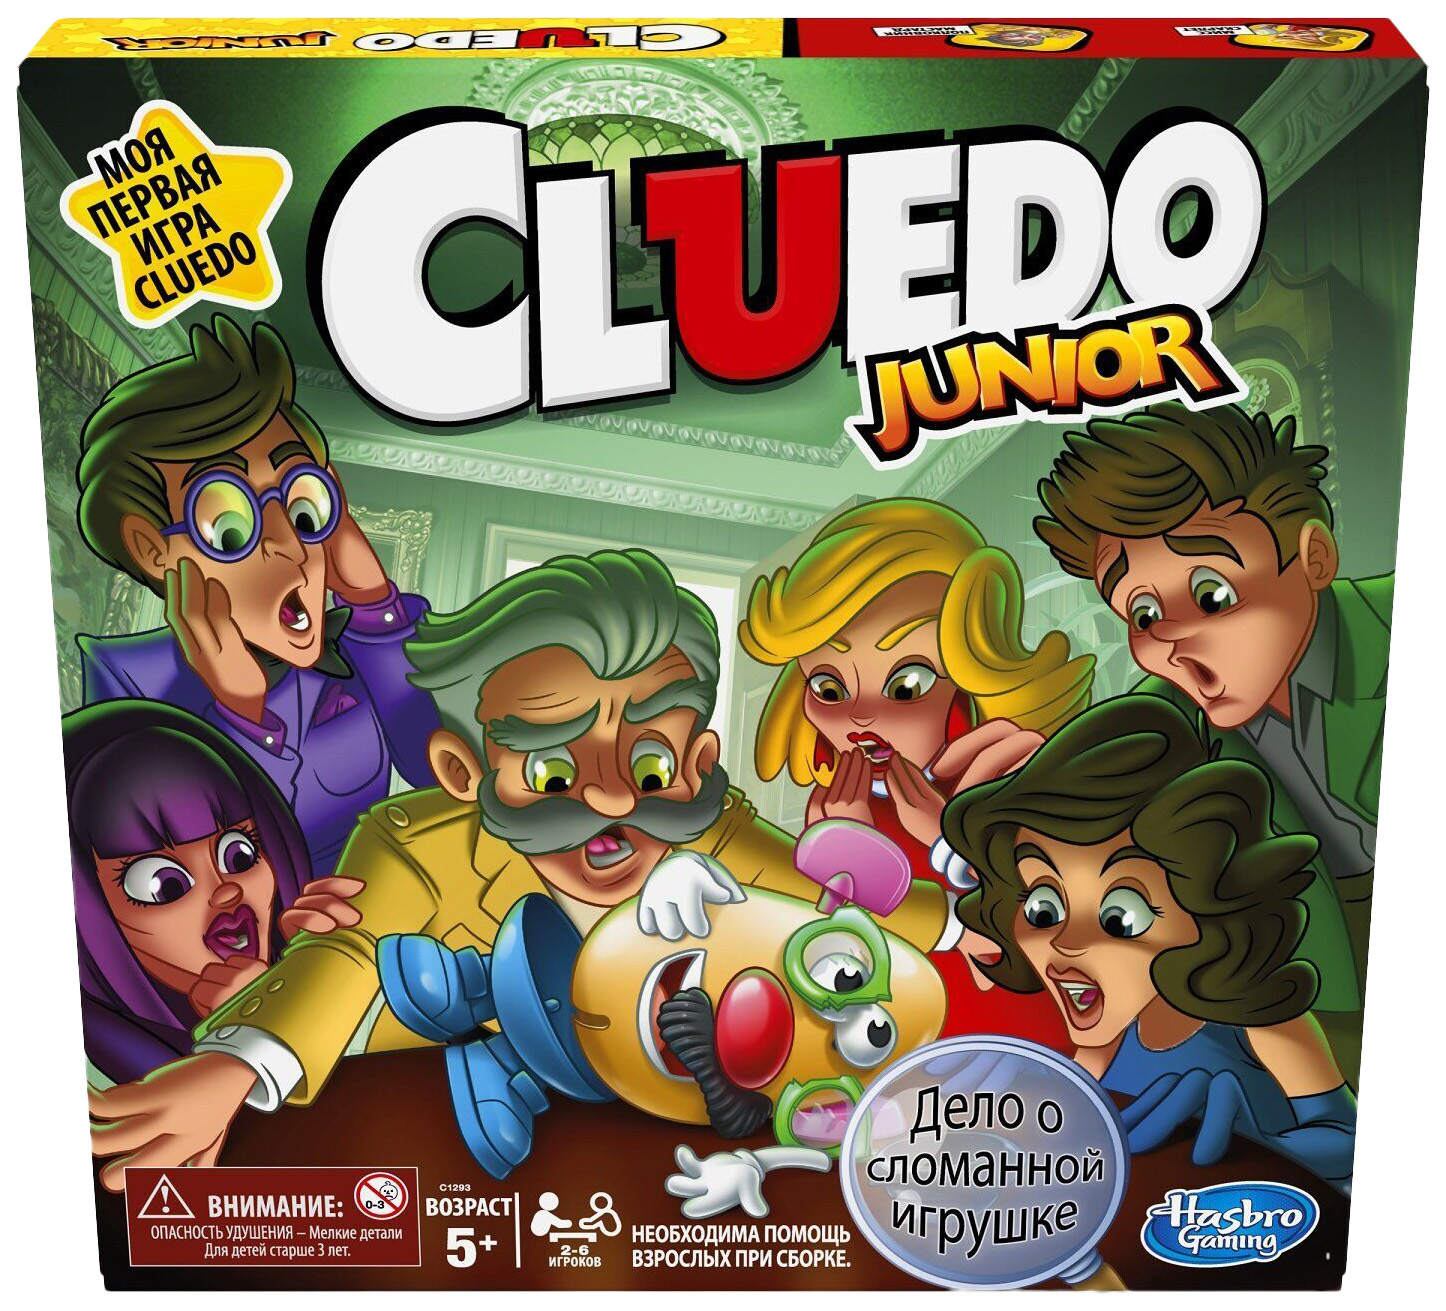 Игра настольная Hasbro Клуэдо джуниор C1293E76 настольная игра hasbro игра в жизнь джуниор арт е6678